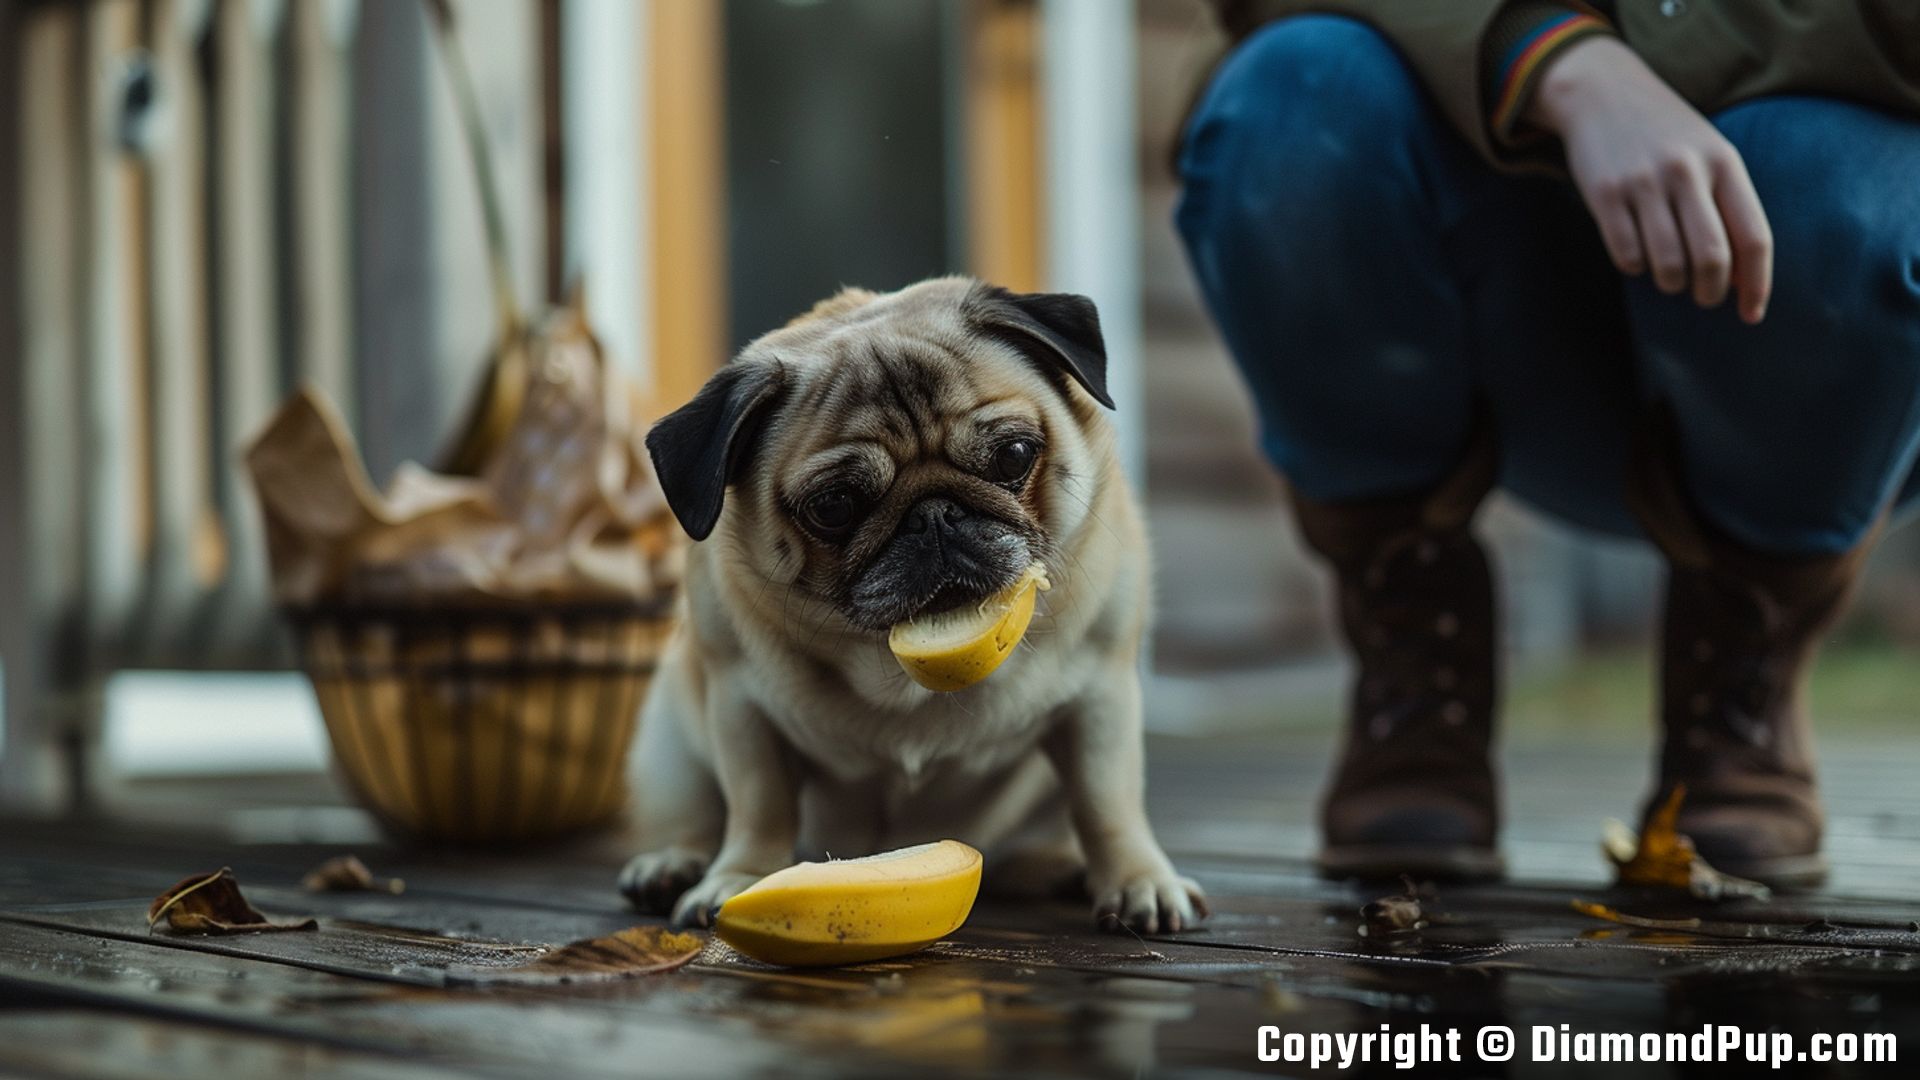 Photo of a Playful Pug Eating Banana